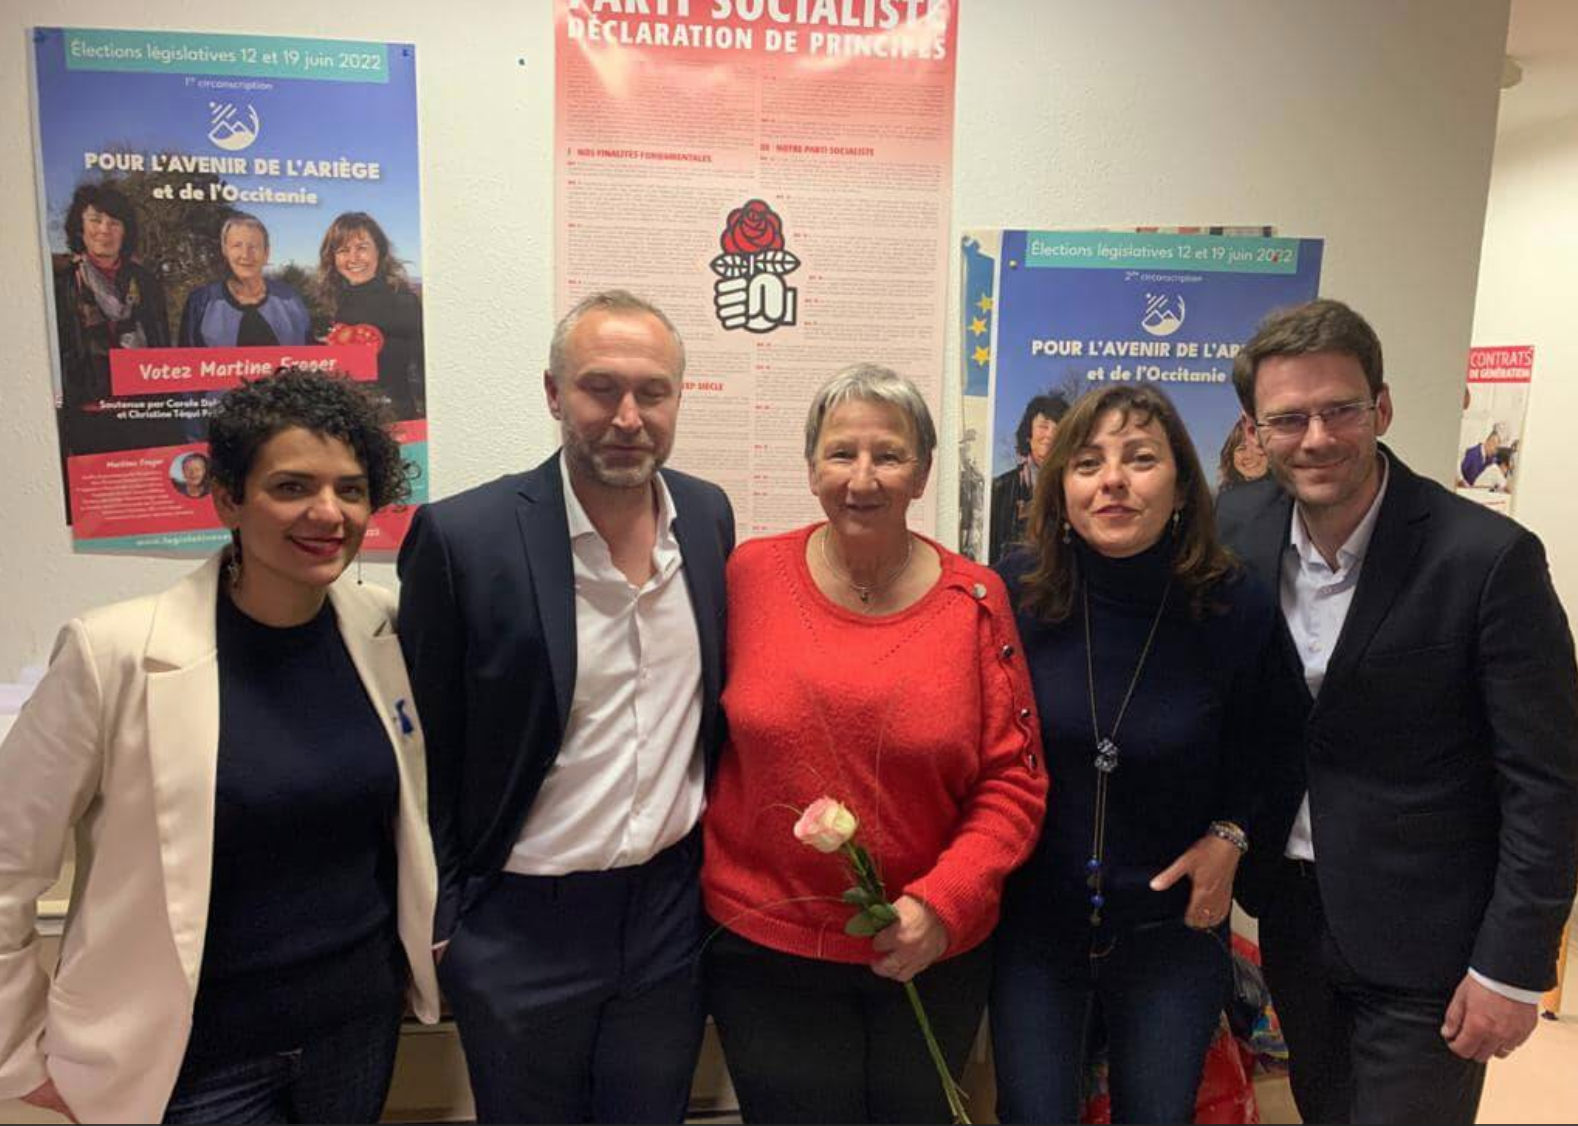 A la gauche de Martine Froger, la présidente de la Région Occitanie, Carole Delga et Nicolas Mayer Rossignol, notre ami et voisin maire de Rouen, N° 2 du parti socialiste